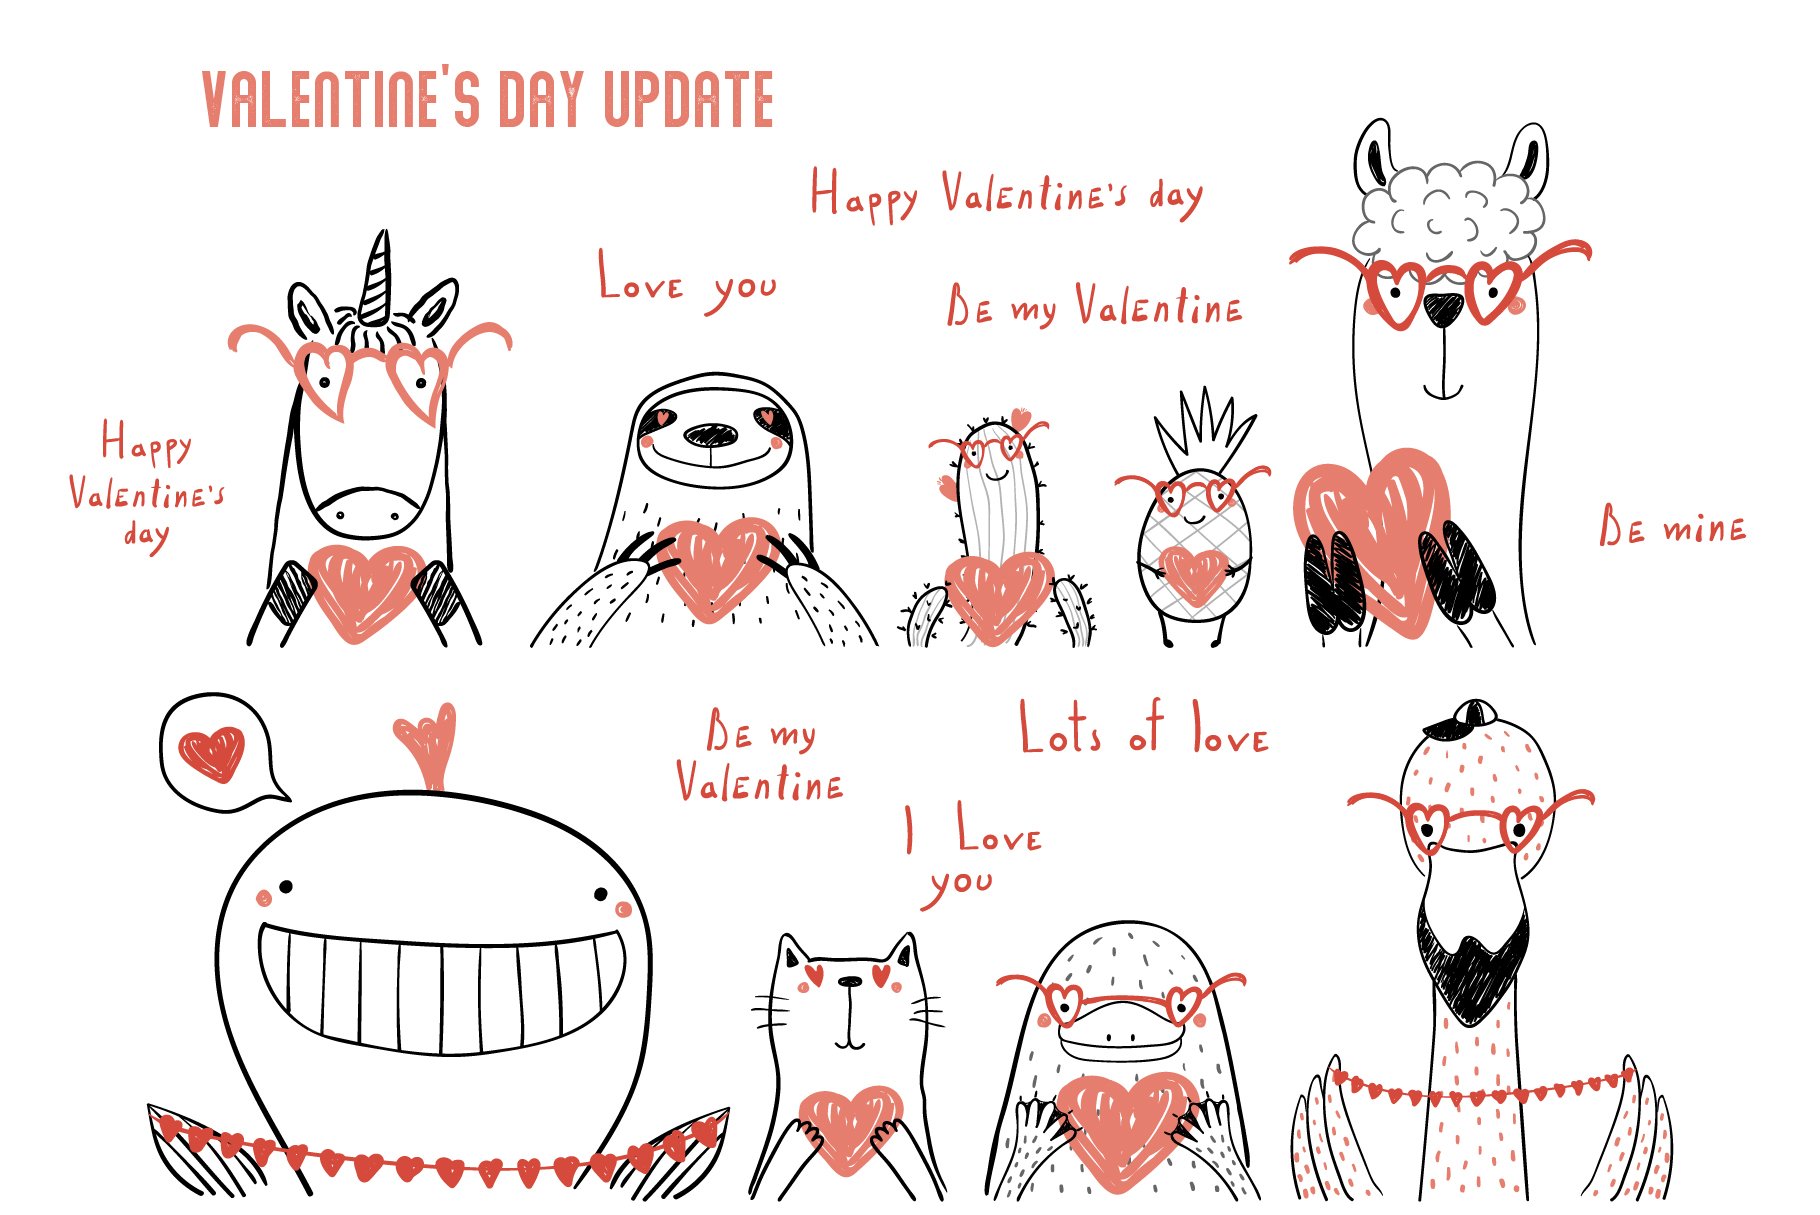 Valentine's day update.